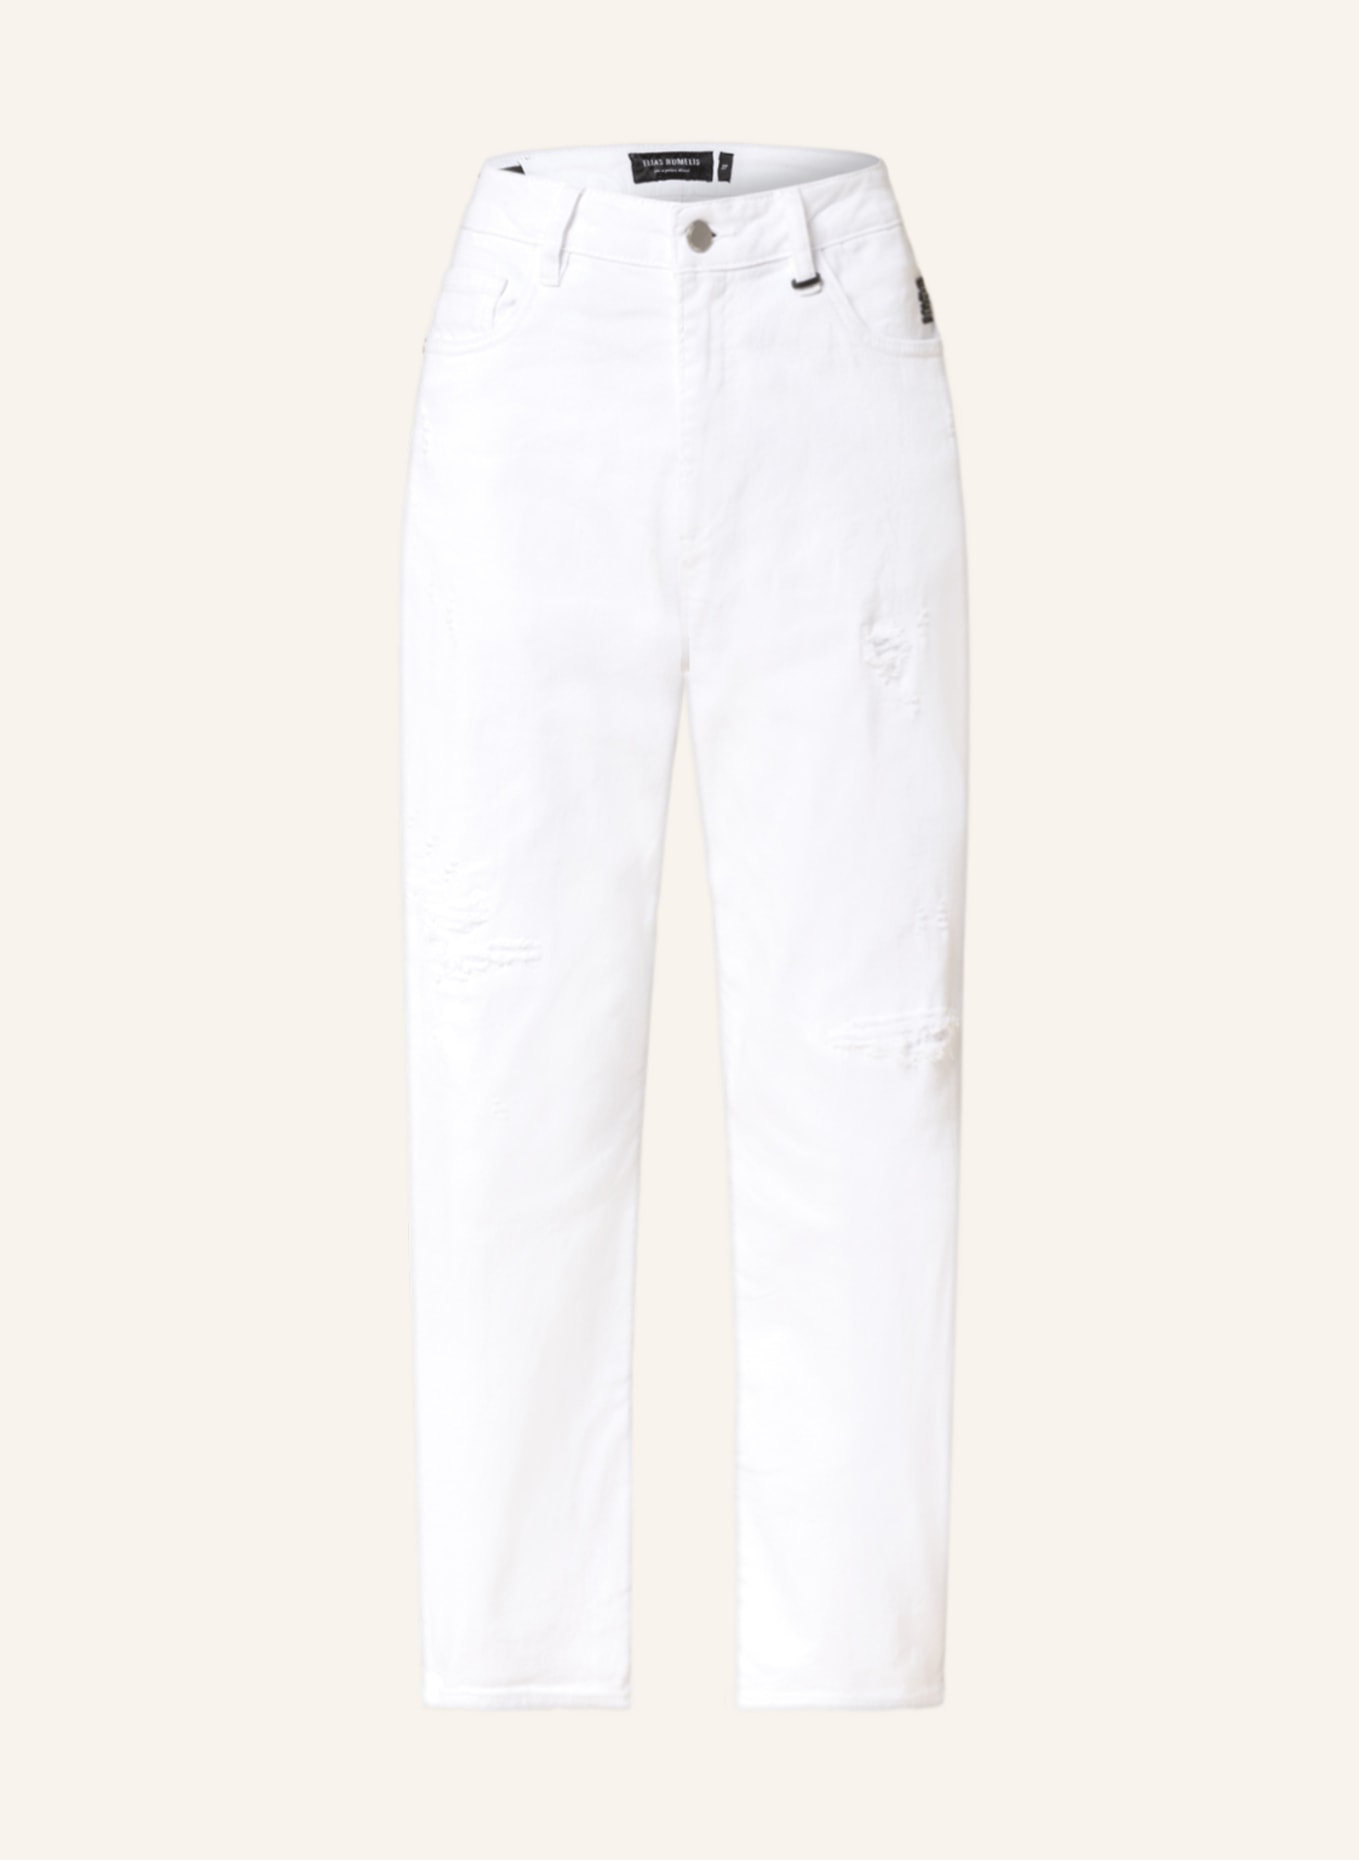 ELIAS RUMELIS 7/8 jeans YOANA, Color: 65 WHITE (Image 1)